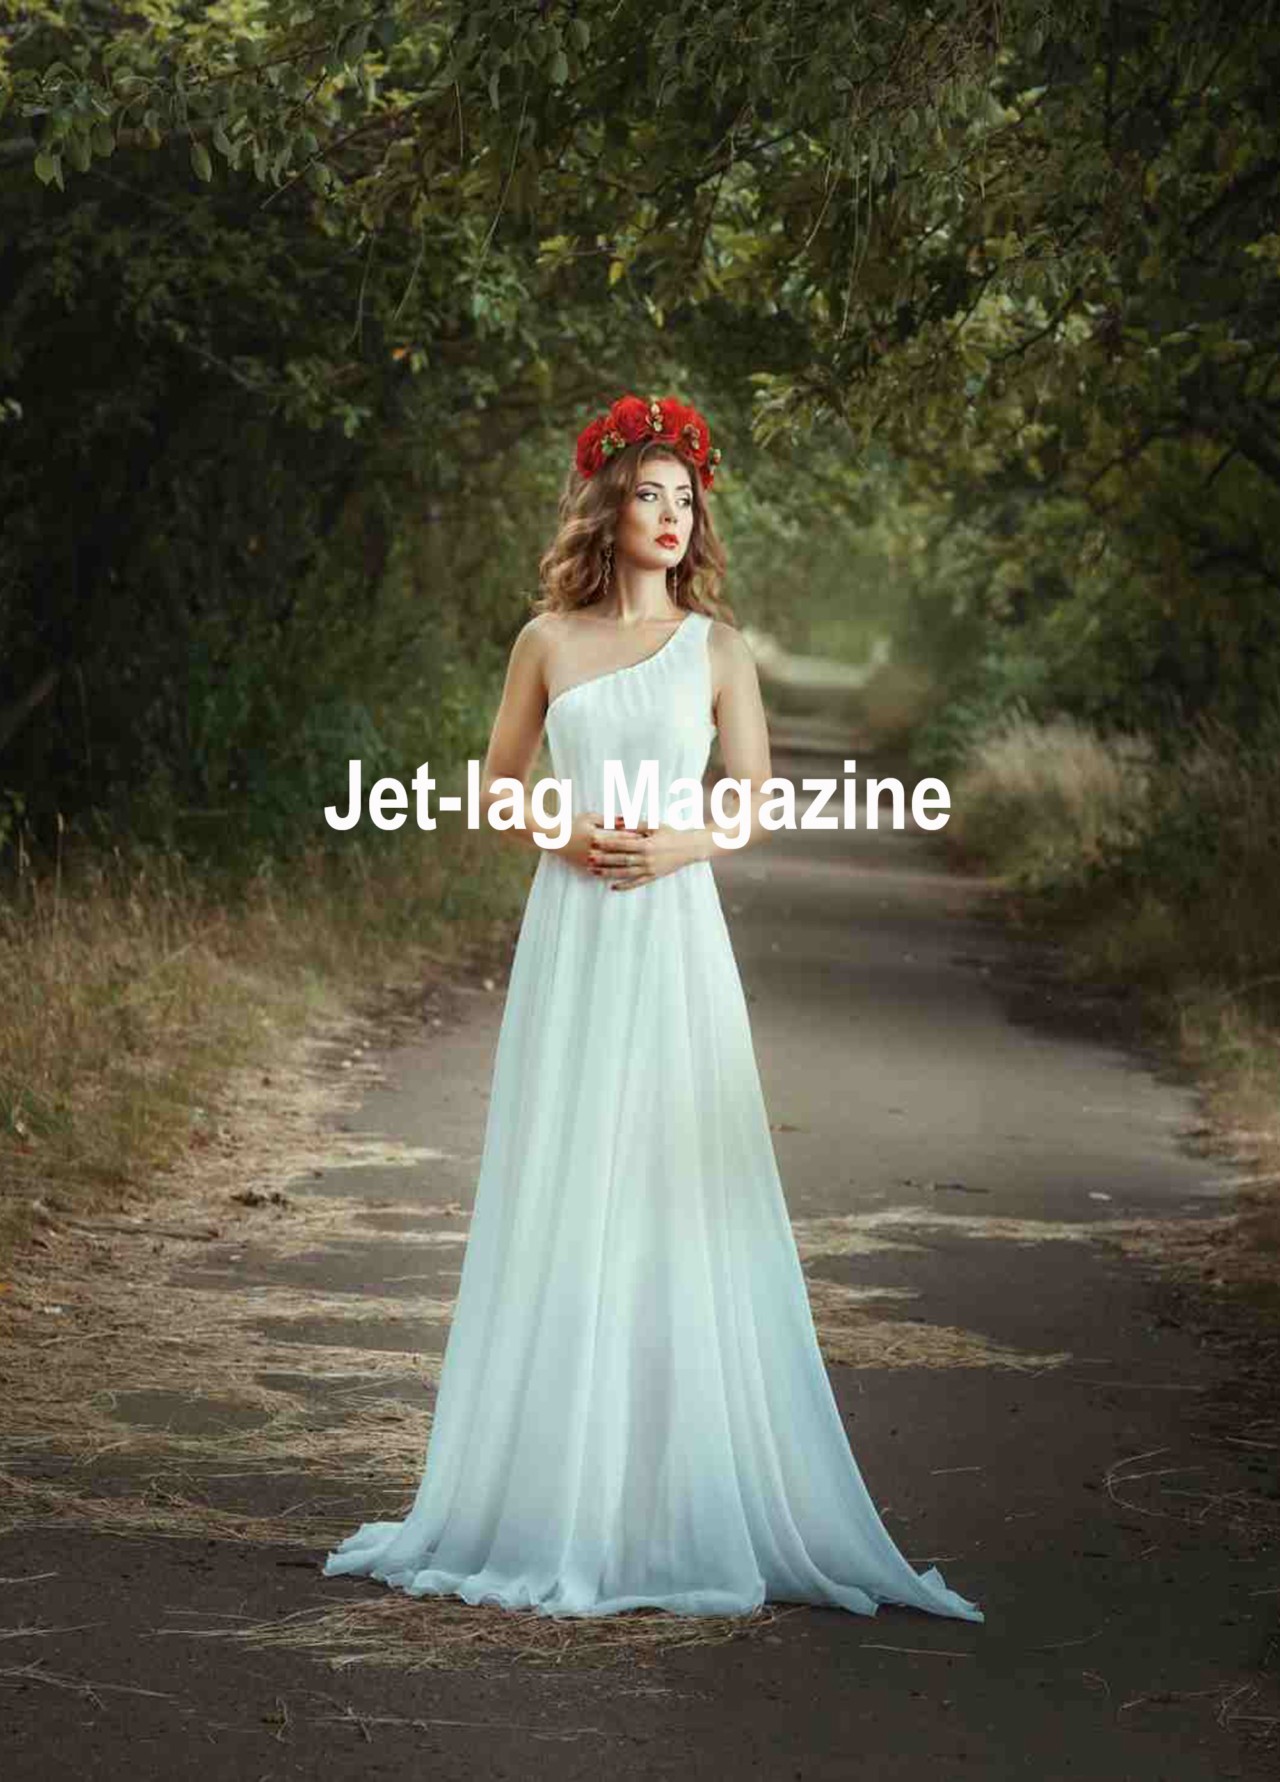 Jet-lag Magazine édition 4